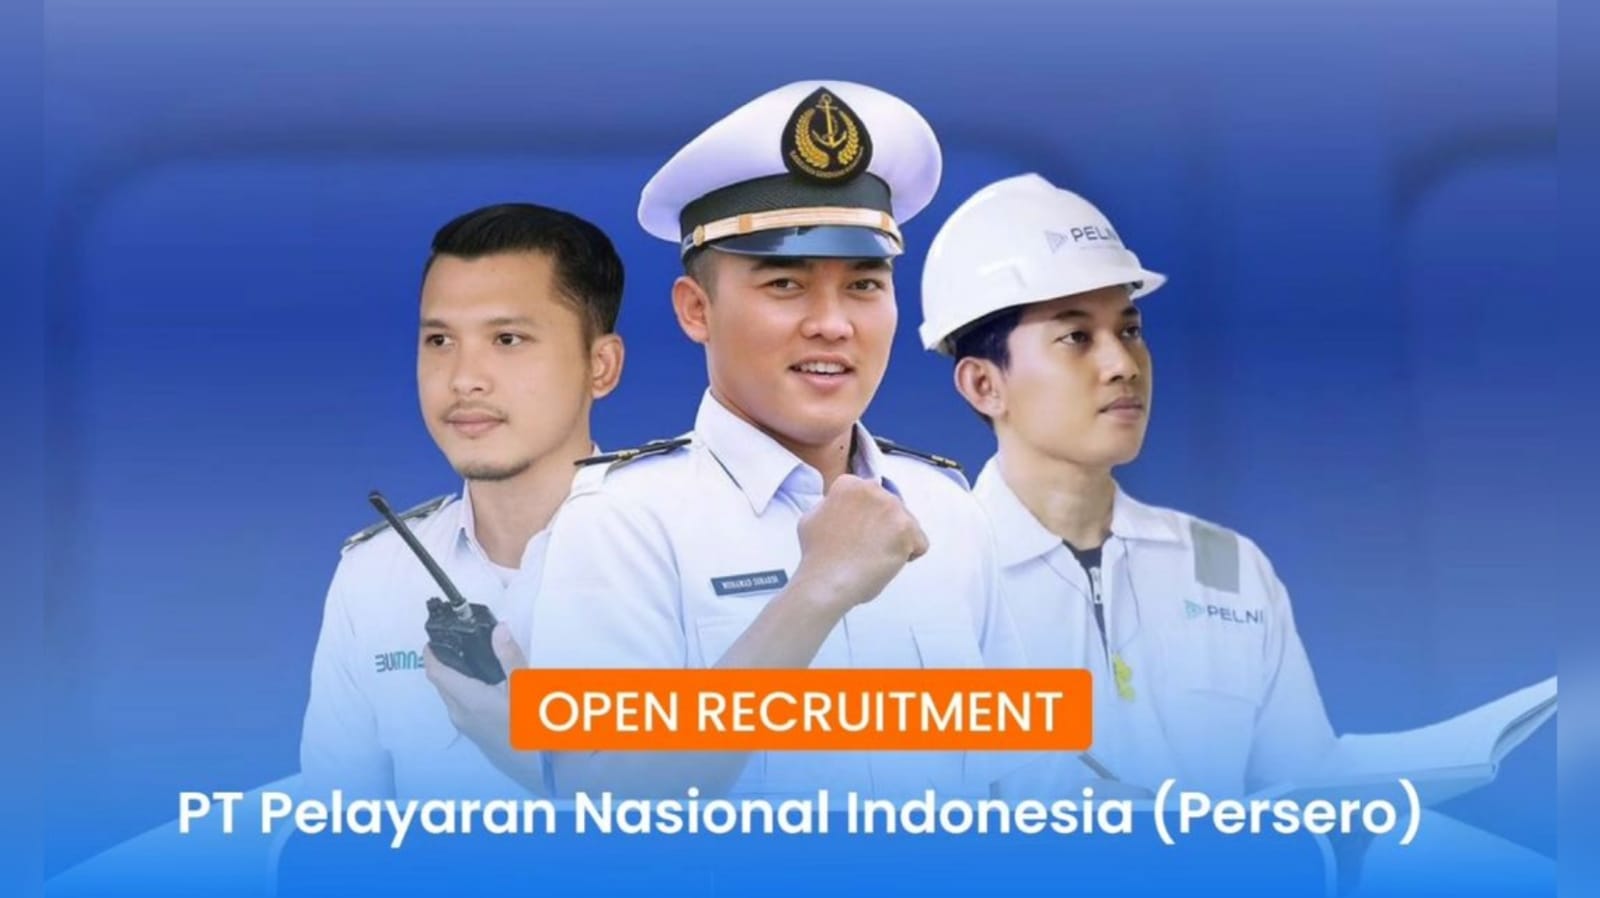 Mau Kerja di Kapal? Cek Lowongan Kerja BUMN PT Pelayaran Nasional Indonesia (Persero) di Sini!